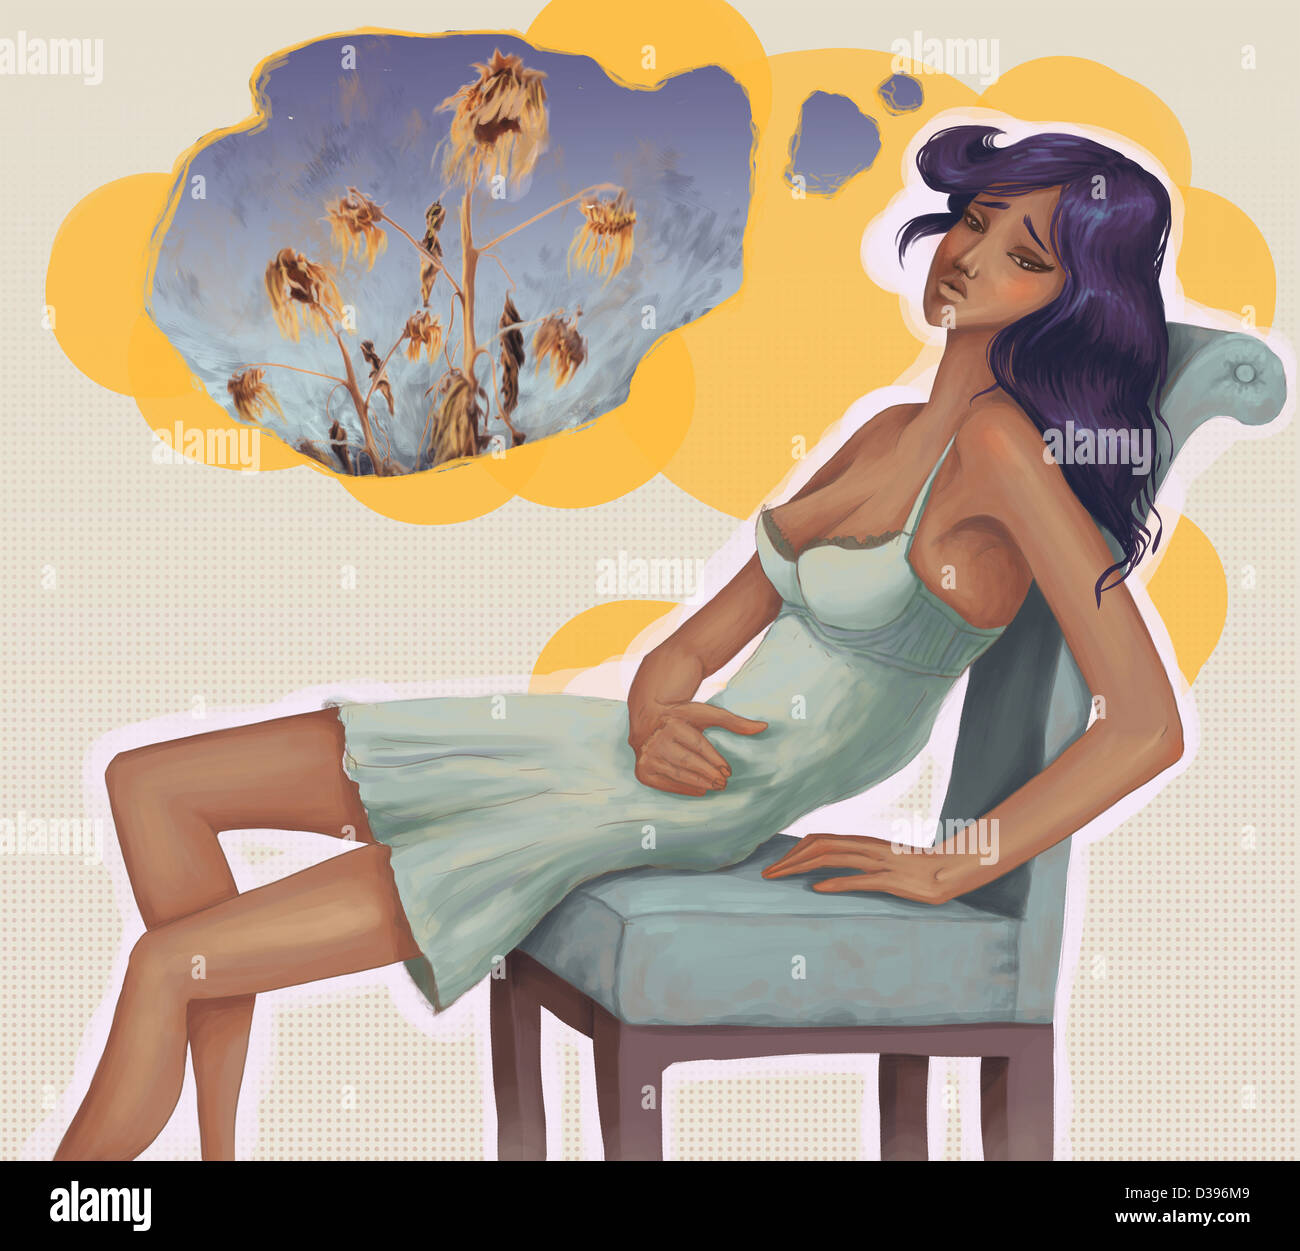 Photo de conceptuel découragée woman sitting on chair avec bulle pensée illustrant l'infertilité Banque D'Images